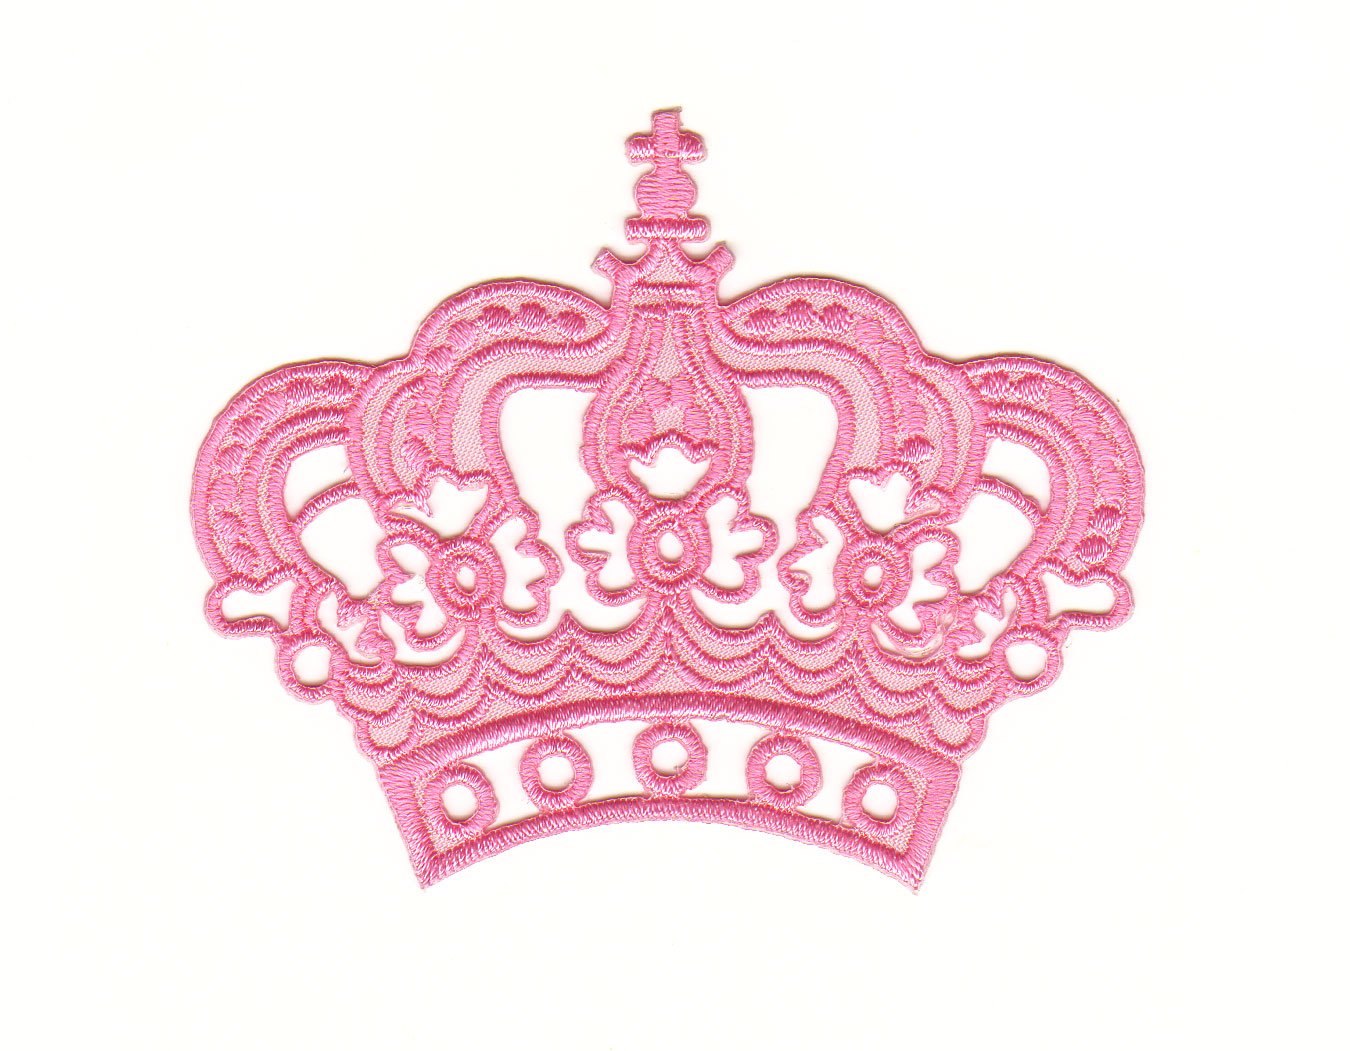 Aufnäher Bügelbild Iron on Patches Applikation Prinzessin Krone rosa pink von Bestellmich / Aufnäher